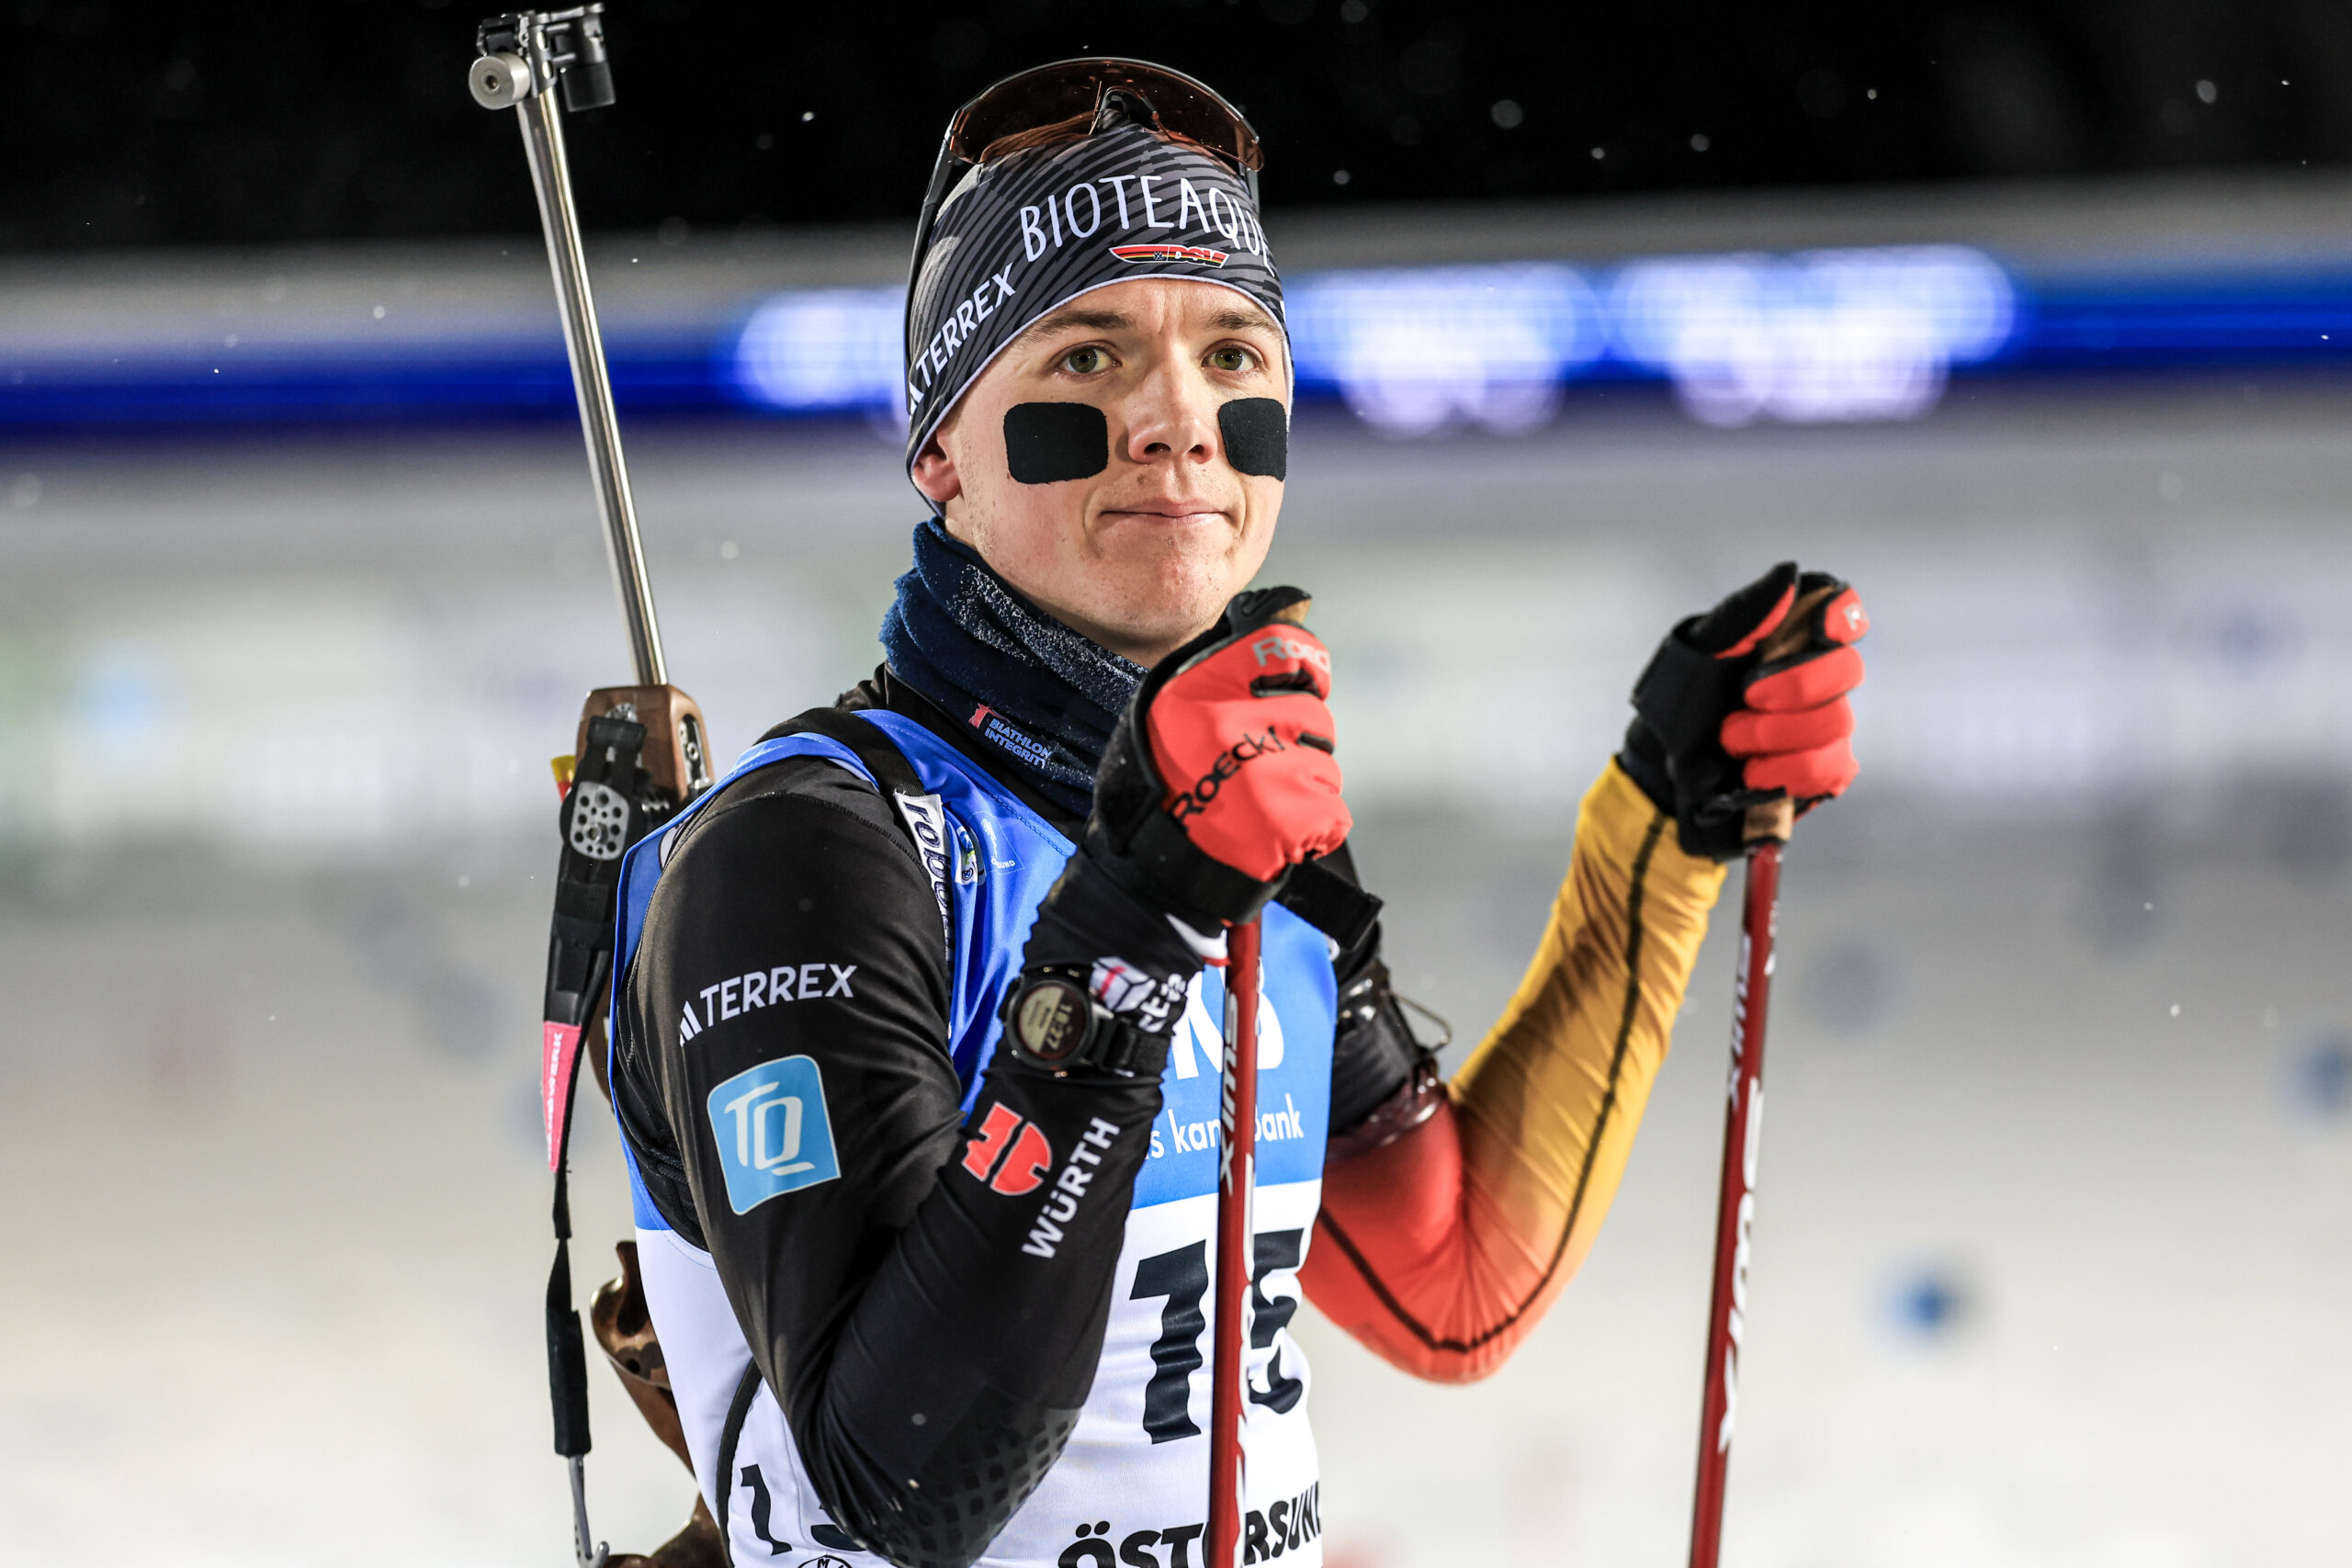 Läuft für DSV-Biathlet Justus Strelow: Zum Auftakt des Biathlon-Weltcups in Östersund kommt er über 20 km als Zweiter ins Ziel - hinter Teamkollege Roman Rees